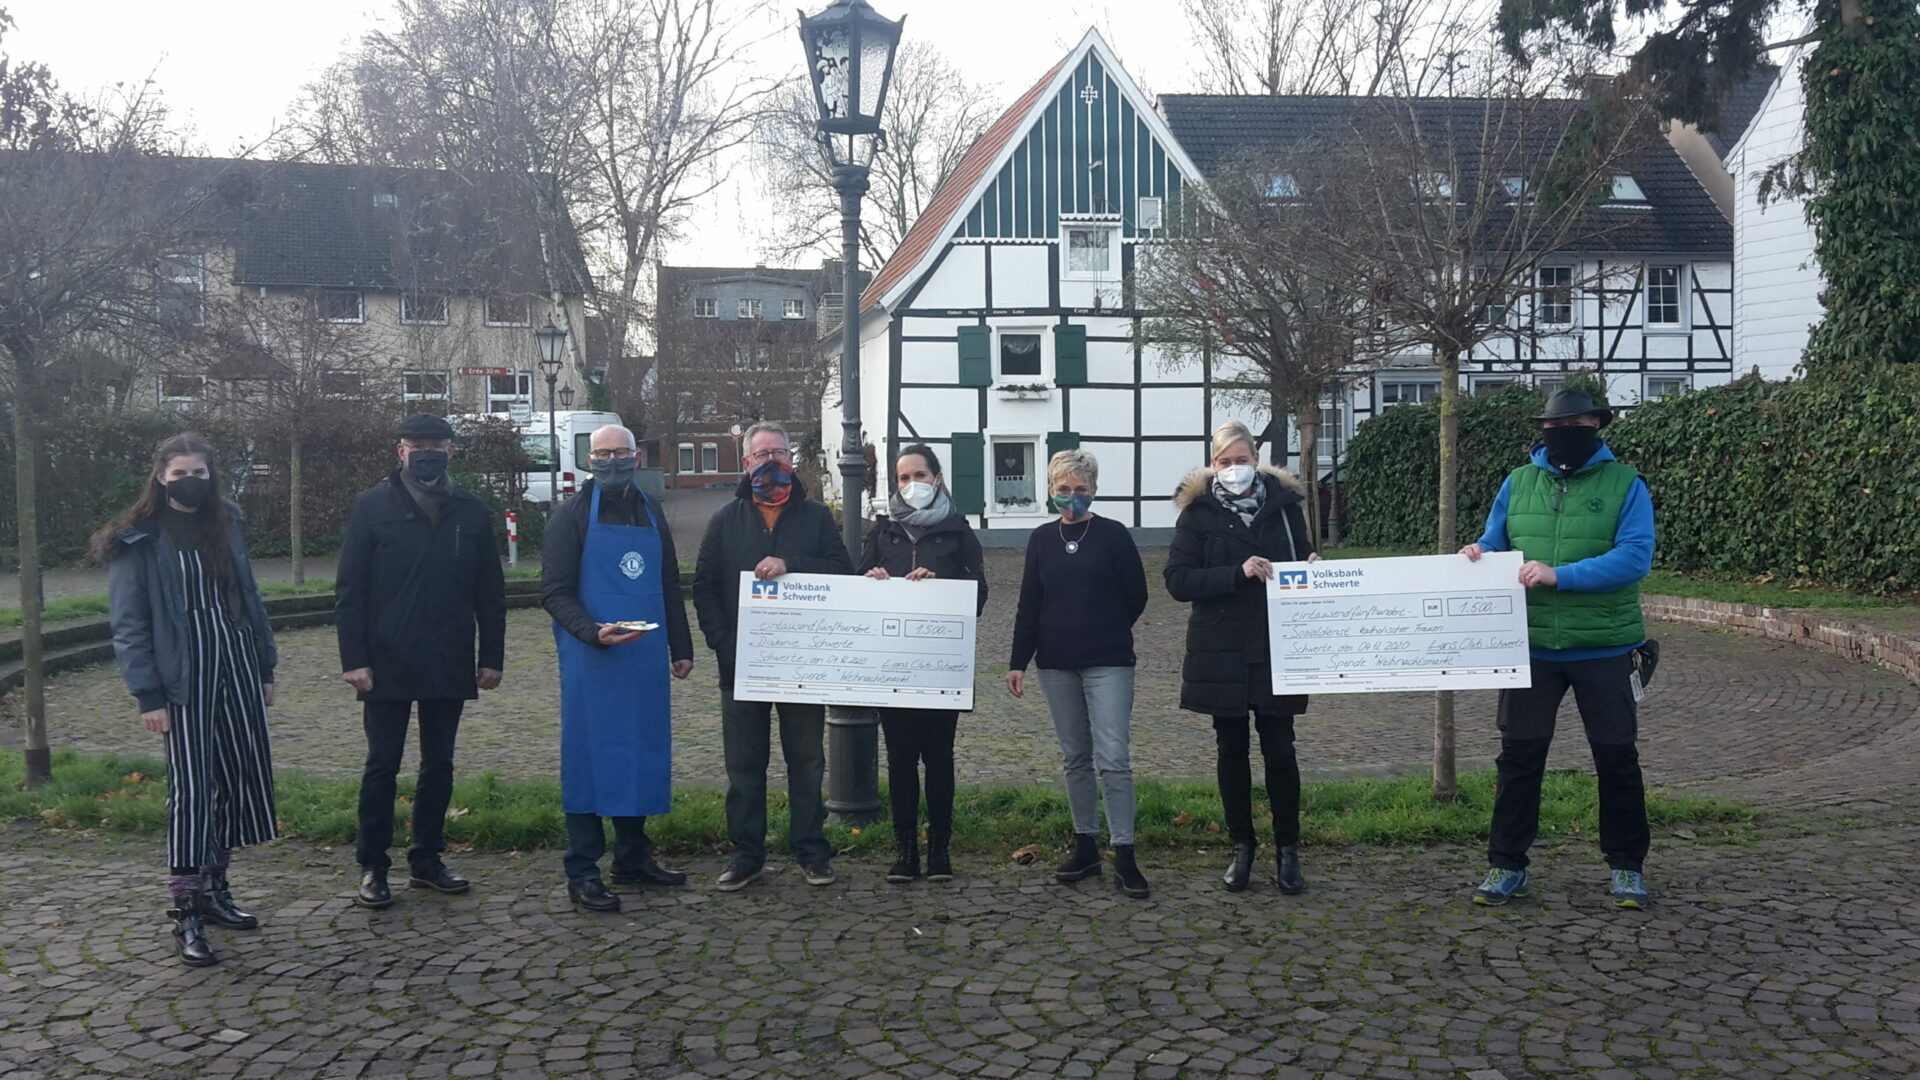 Lions Club Schwerte Ruhr fördert soziale Projekte